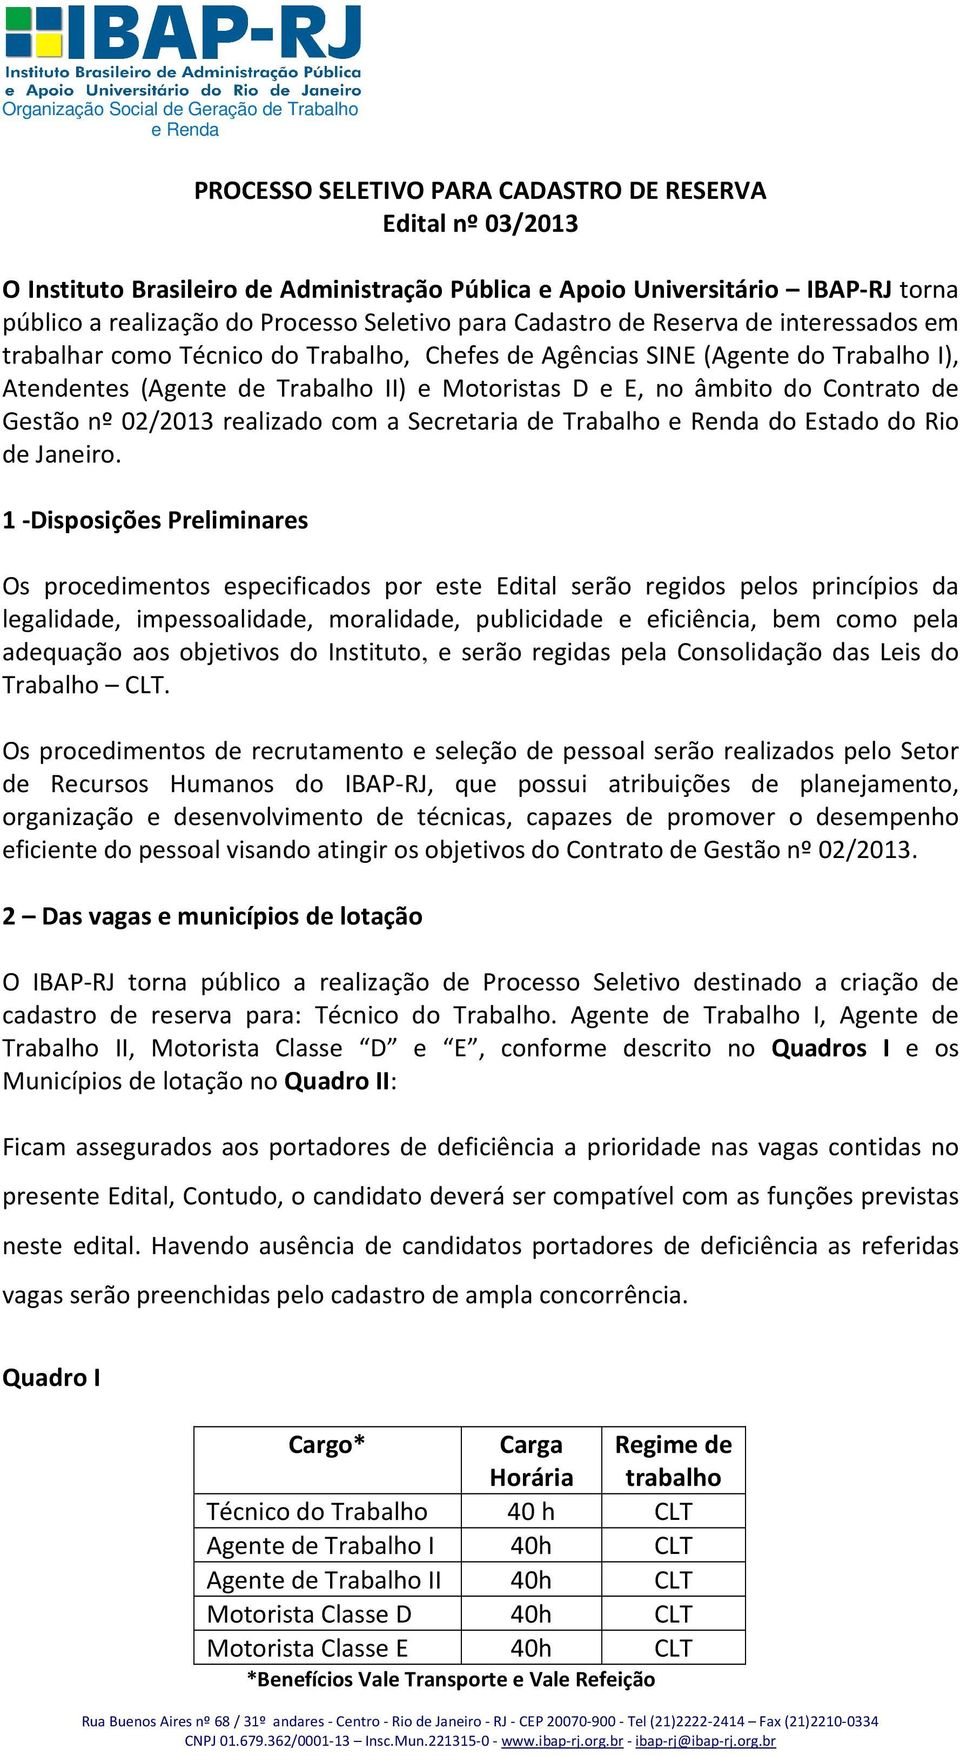 de Gestão nº 02/2013 realizado com a Secretaria de Trabalho do Estado do Rio de Janeiro.